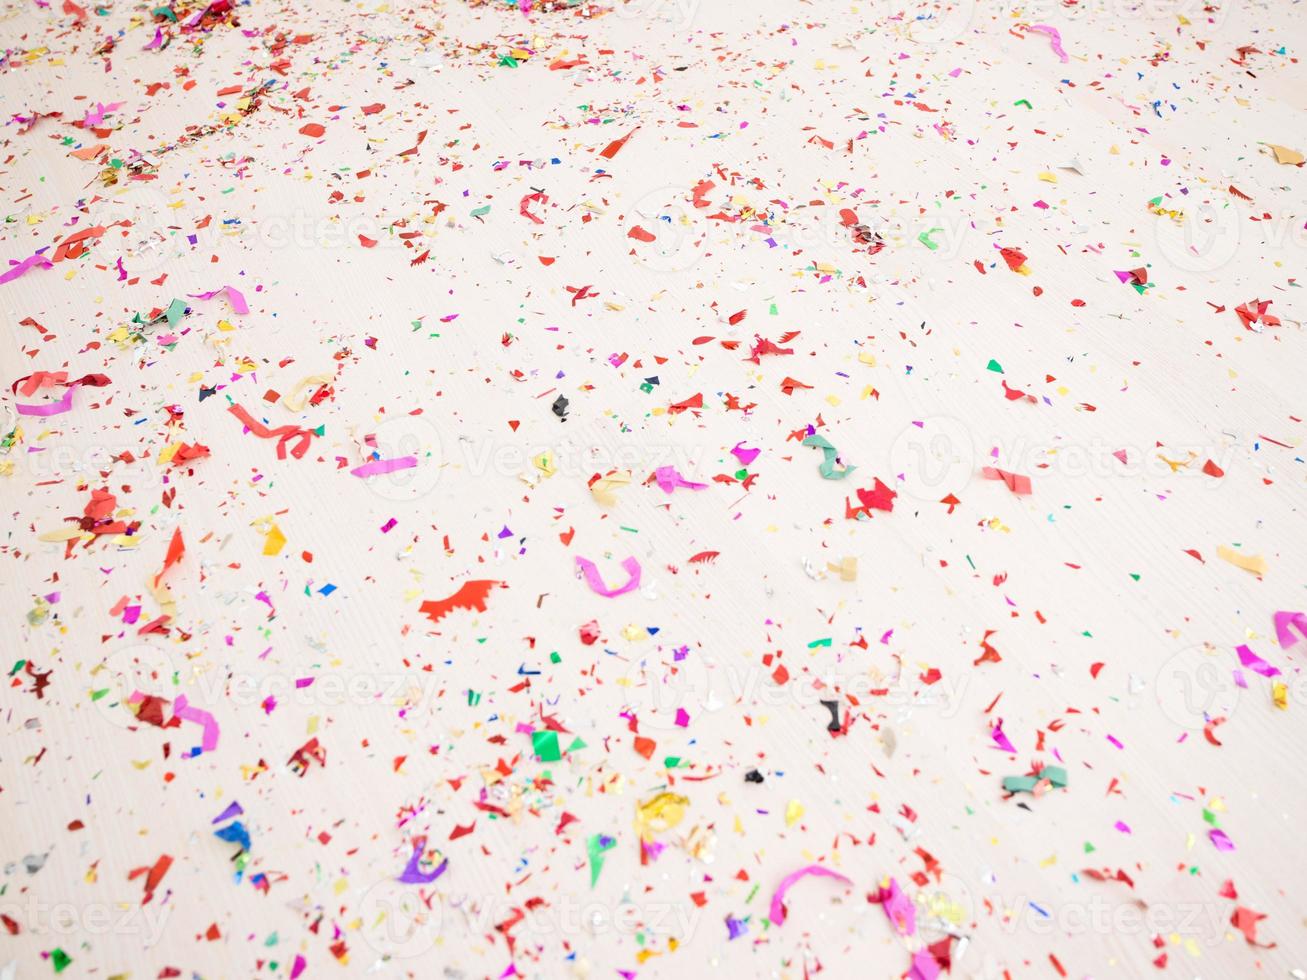 Confetti on floor photo